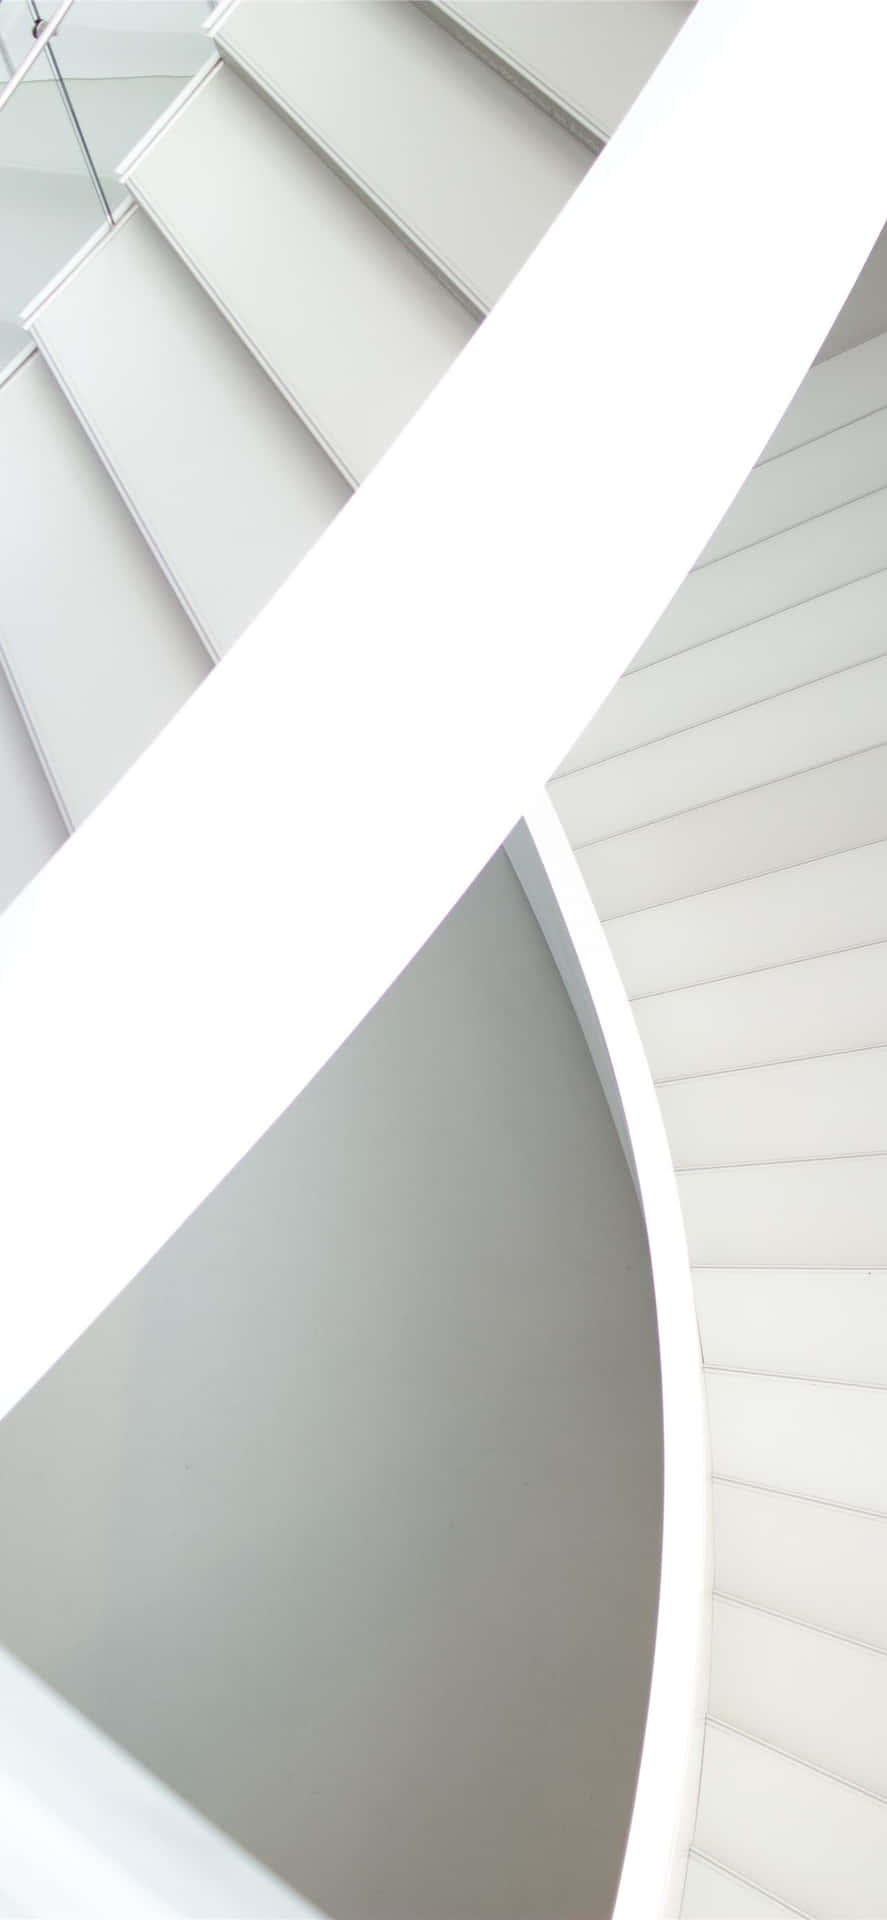 Arquitecturamoderna, Escaleras Blancas, Iphone. Fondo de pantalla